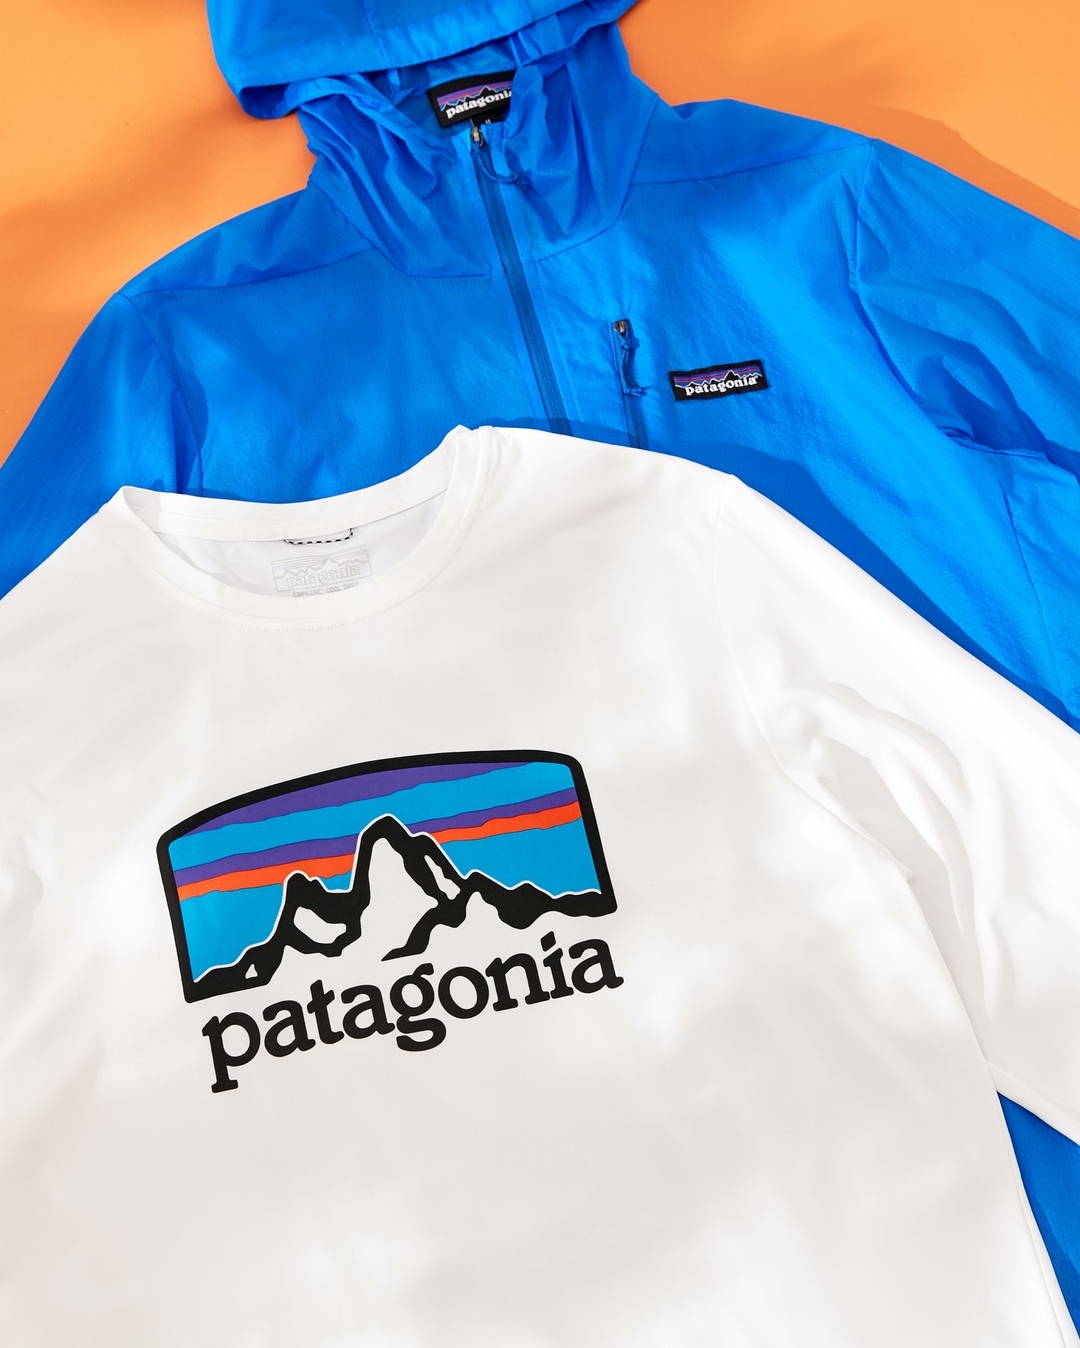 lamoda - Обойти все окрестности приятнее в удобной одежде. Patagonia знает как покорить непроходимые тропы ,найти самые безлюдные водоёмы, а главное: сделать это ярко.
⠀
www.lamoda.ru/s/HVu4IL/